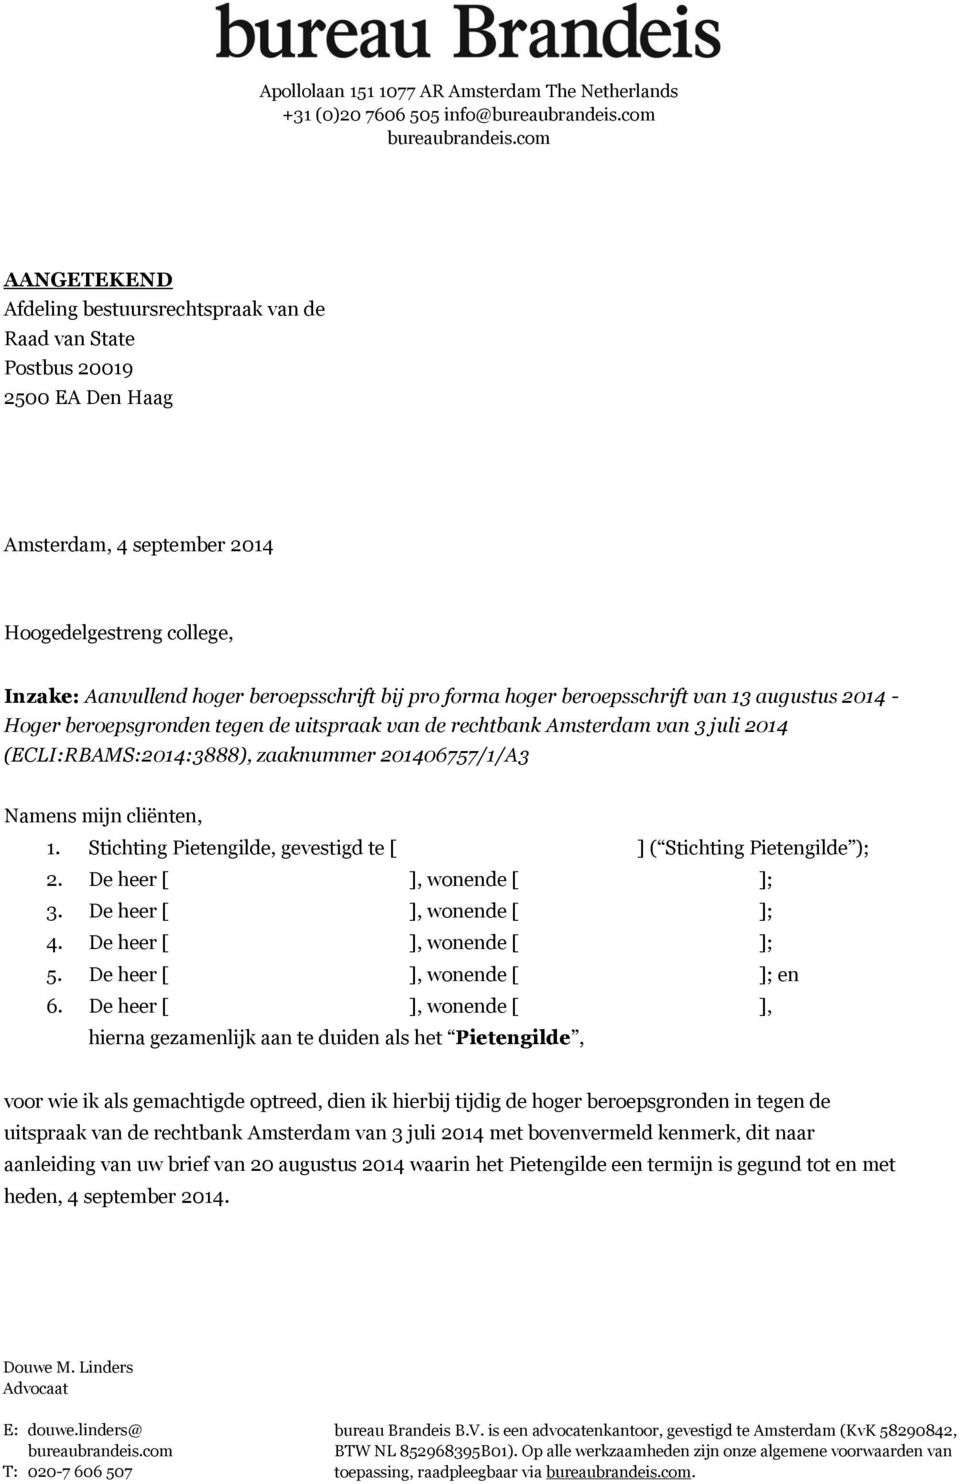 forma hoger beroepsschrift van 13 augustus 2014 - Hoger beroepsgronden tegen de uitspraak van de rechtbank Amsterdam van 3 juli 2014 (ECLI:RBAMS:2014:3888), zaaknummer 201406757/1/A3 Namens mijn